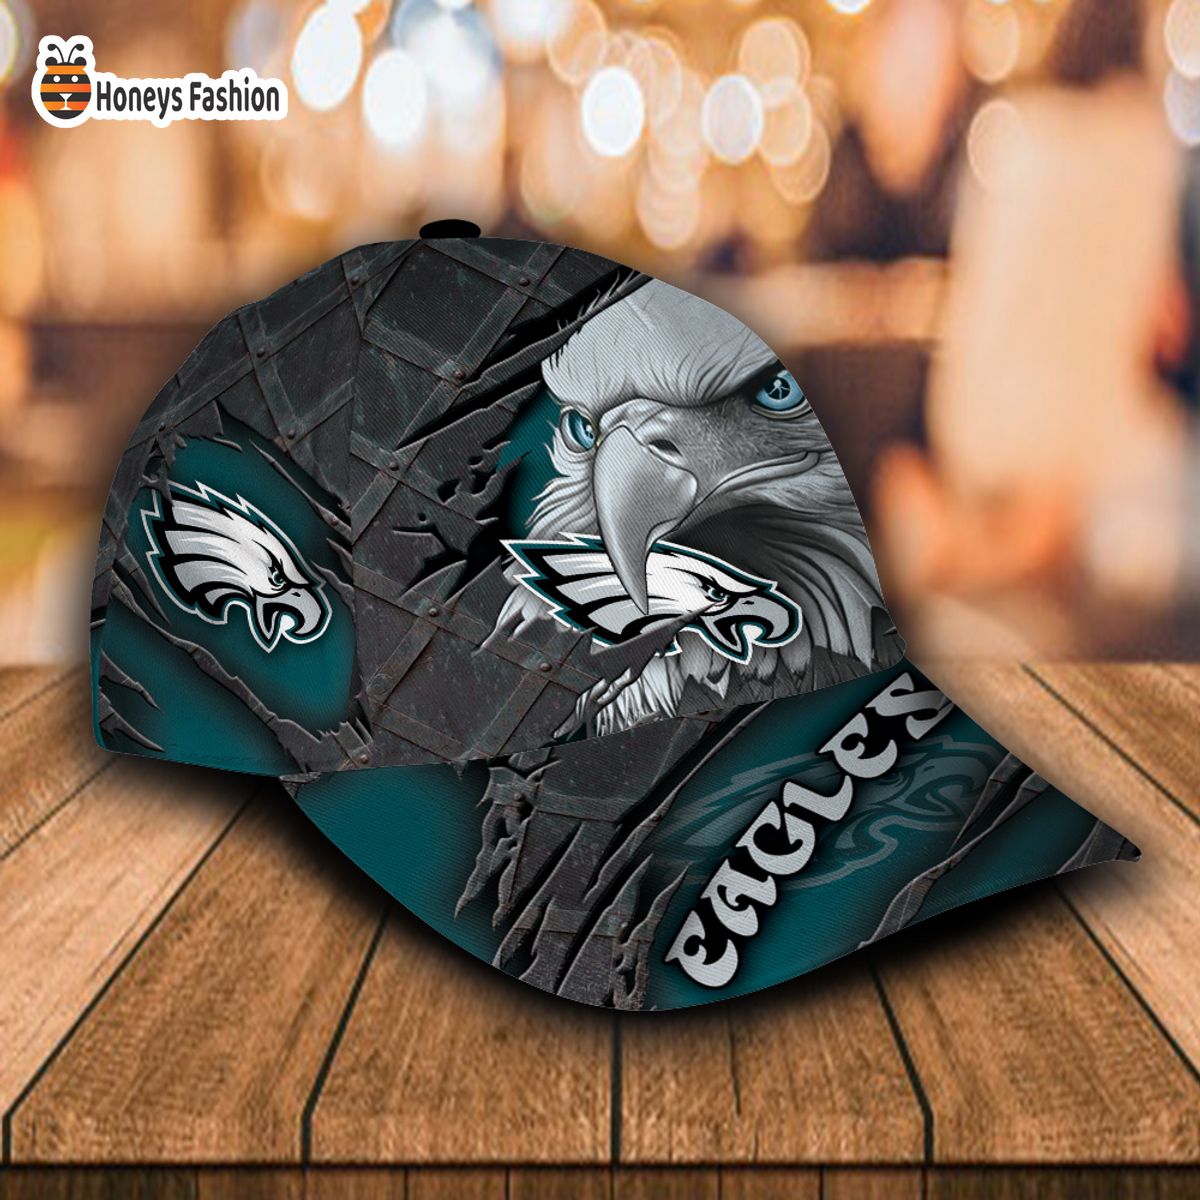 Philadelphia Eagles NFL Eagle Custom Name Classic Cap